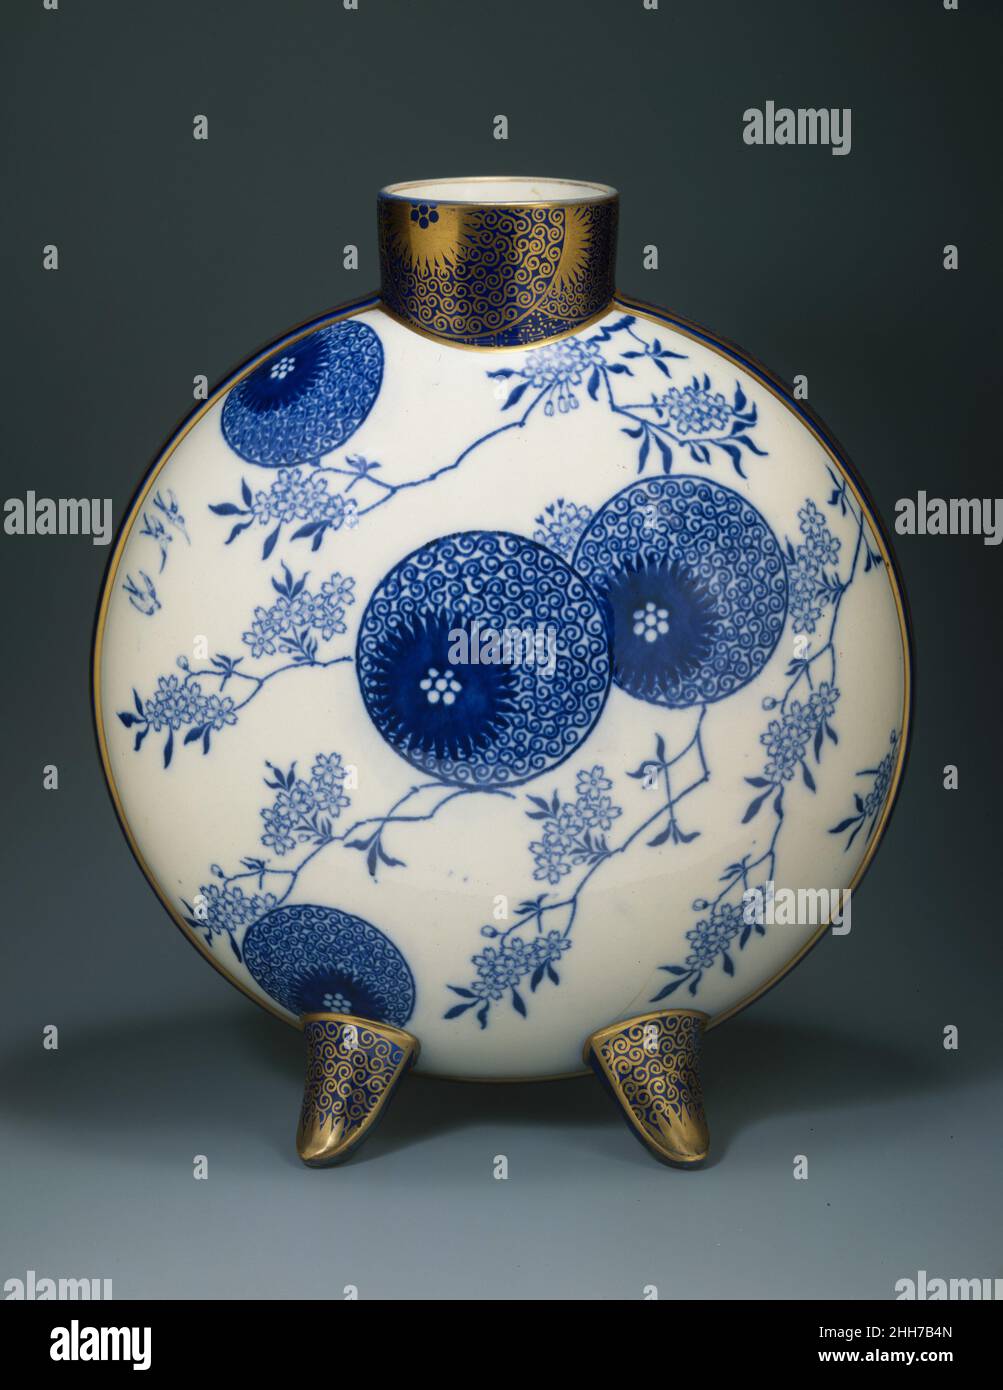 Mondflasche ca. 1878–82 Designed by Henry Slater Diese Vase ist in orientalischer Mondflaschenform, aber mit sphäroiden anstatt abgeflachten Seiten. Sie ist beidseitig in Unterglasur-Blau mit dem Sprühdesign von Doulton bedruckt und auf der einen Seite mit dem Tellerdesign mit Weidenmuster und auf der anderen Seite mit einer Gruppe exotischer Früchte überzogen. Diese Motive werden asymmetrisch auf die Oberflächen im japanischen dynamischen Wechselspiel zwischen belegtem und leerem Raum gesetzt. Die blaue Dekoration wurde mit Transferdruck bedruckt, und für das vergoldete Ornament wurden Schablonen verwendet, die mit den gleichen Mustern geschnitten wurden. Um die zylindrische Stockfoto